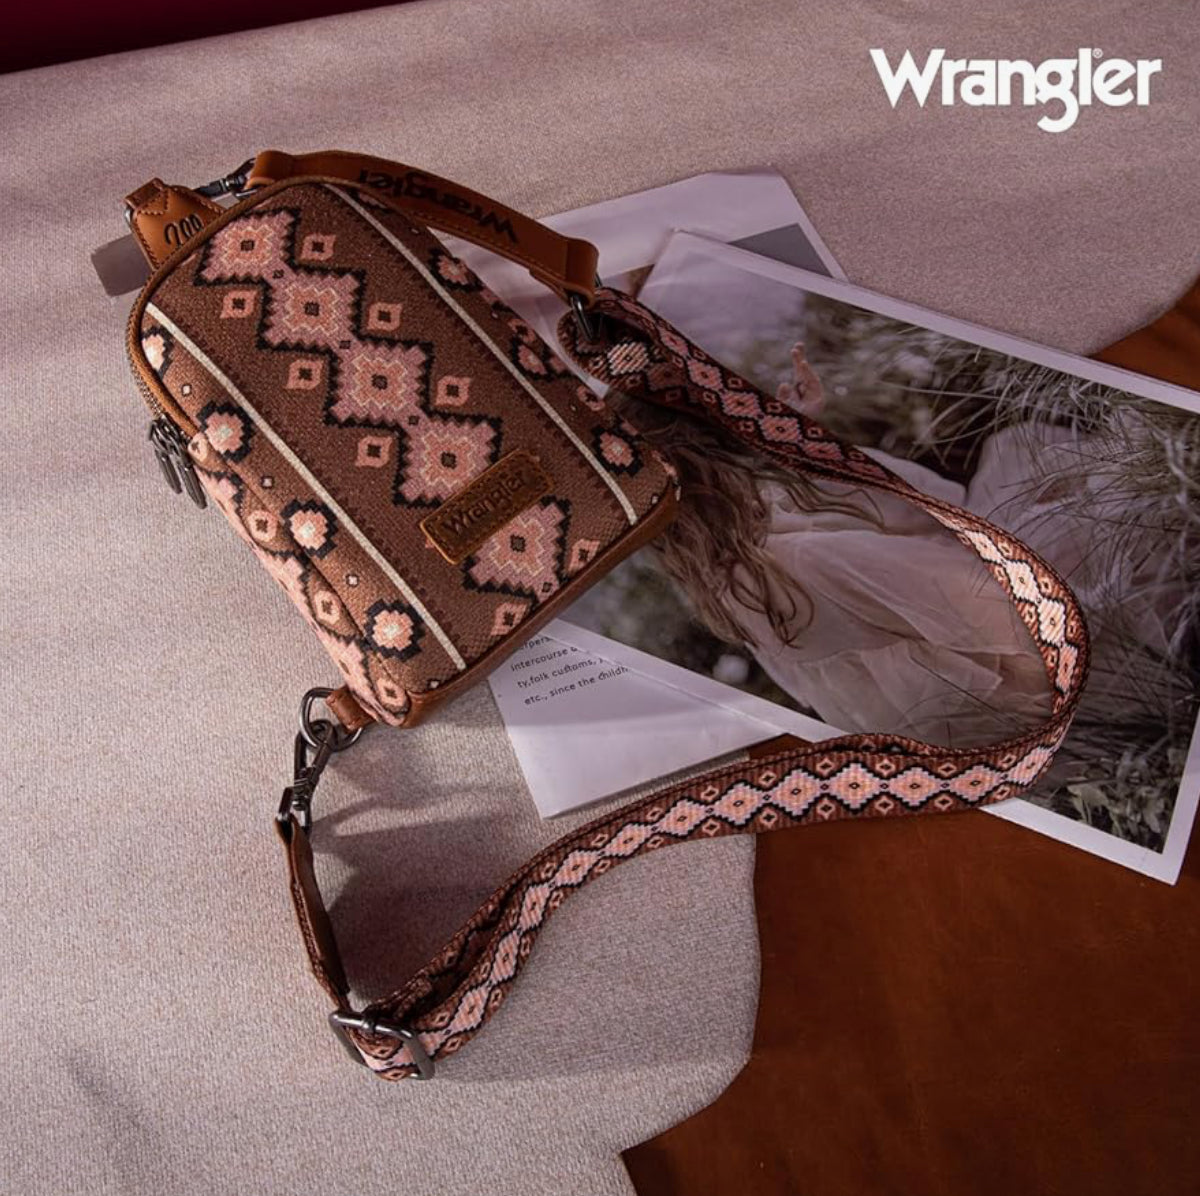 Wrangler® Sling Bag - Dark Brown